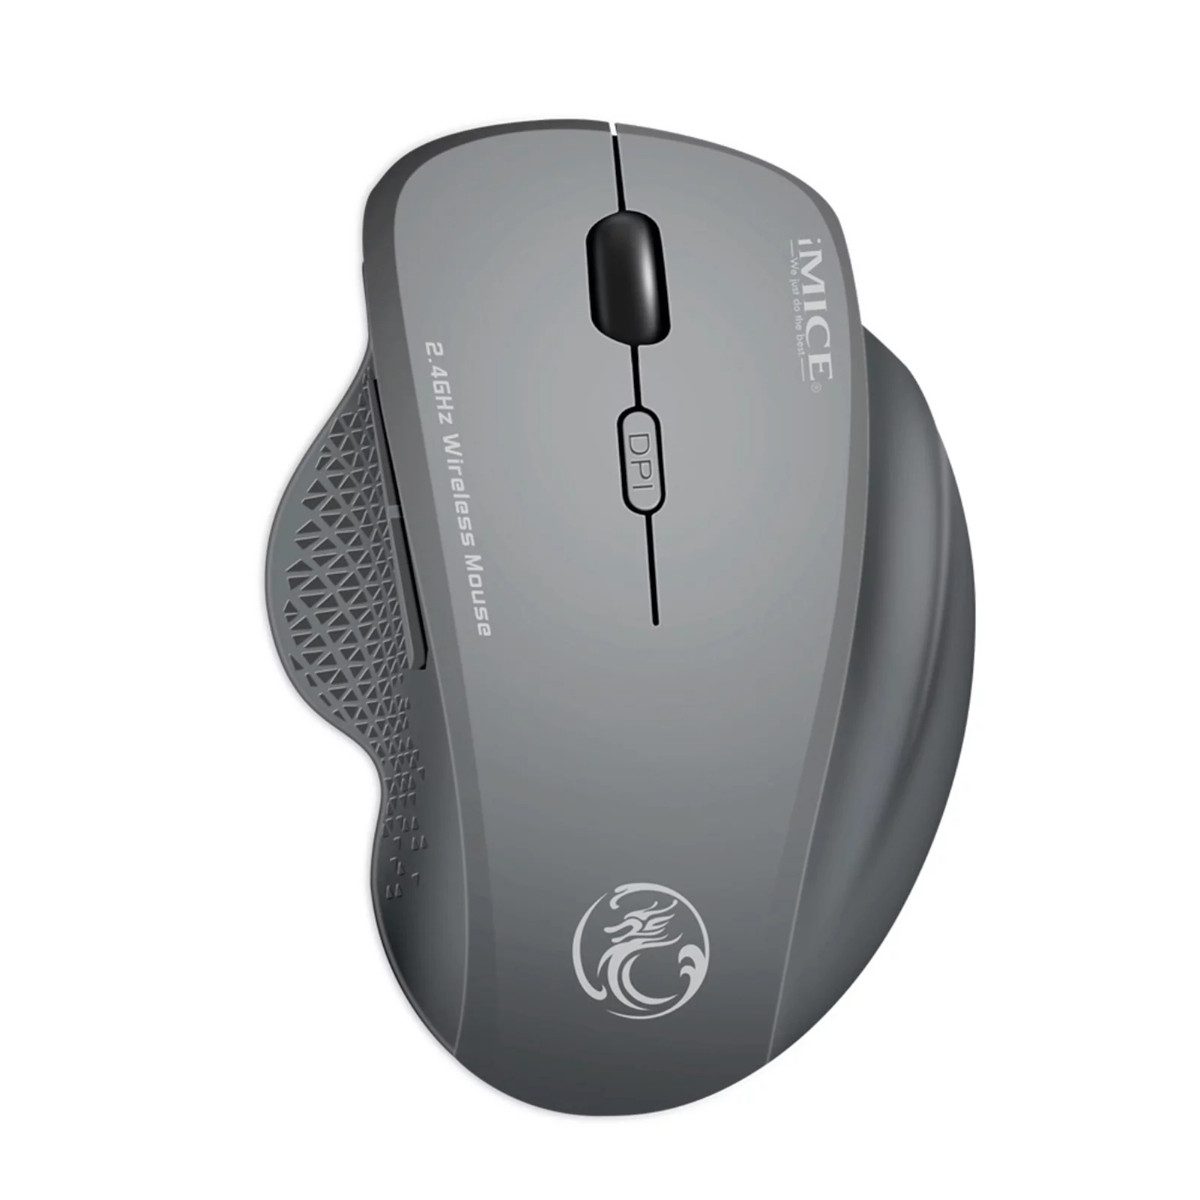 Welikera Drahtlose Maus, 2.4GHz Bluetooth einstellbare DPI Computer Maus Maus- und Mauspad-Set